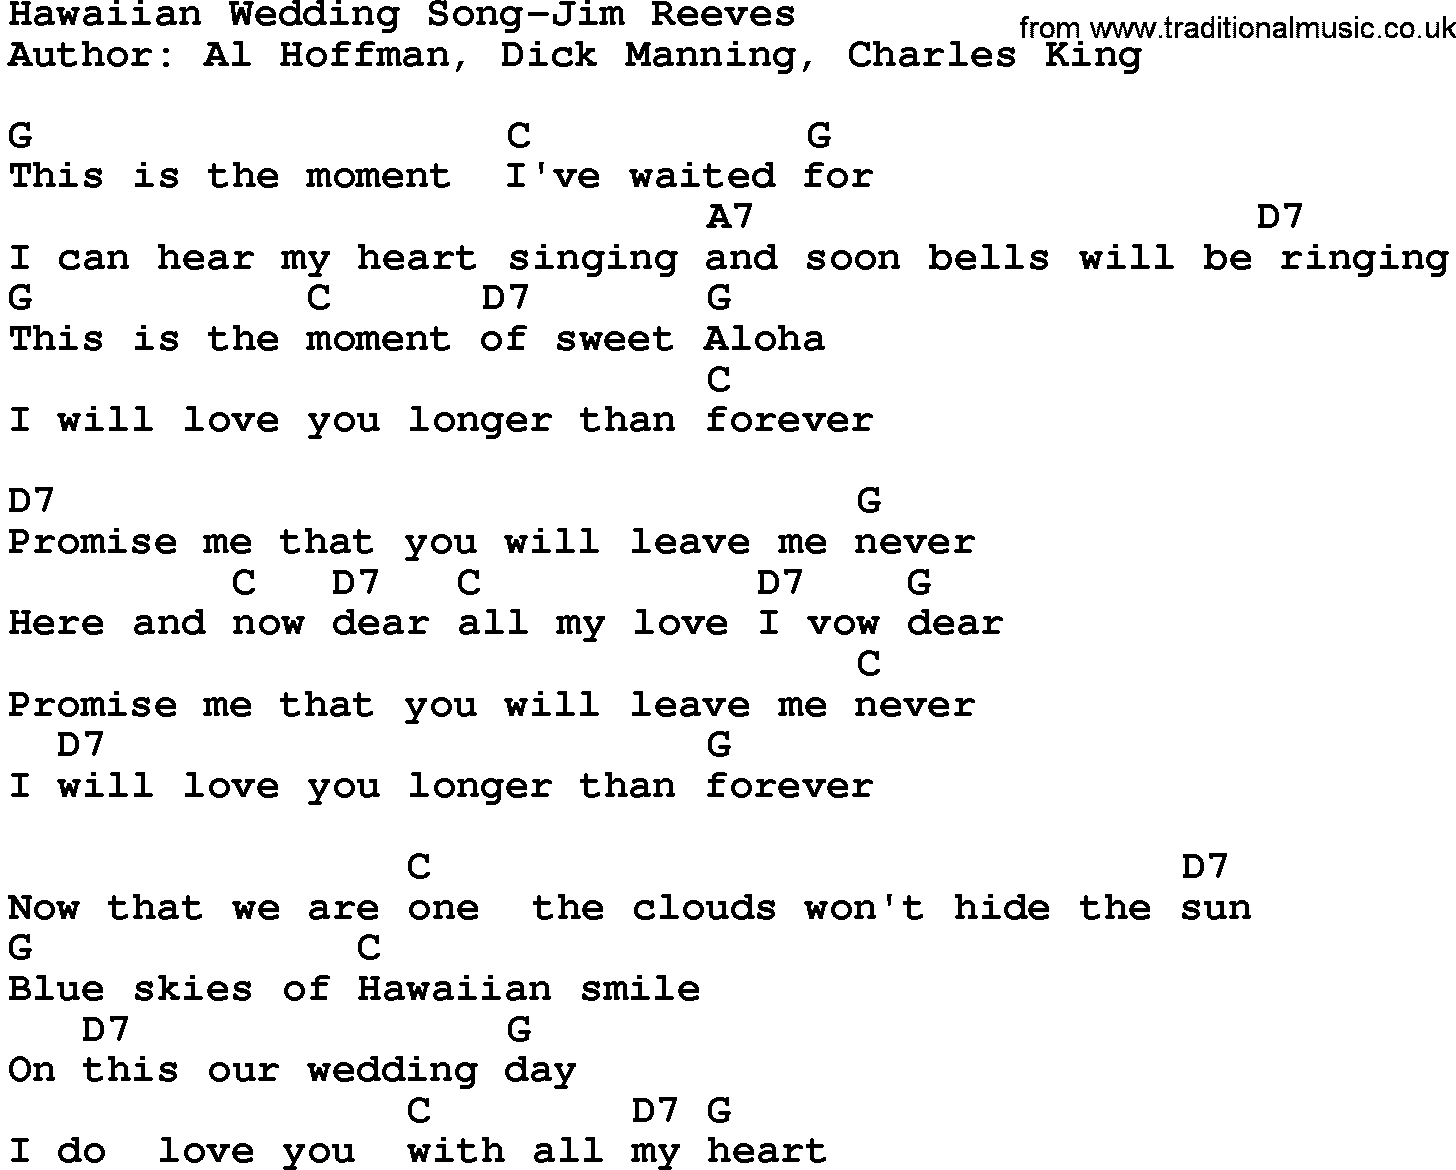 Country music song: Hawaiian Wedding Song-Jim Reeves lyrics and chords